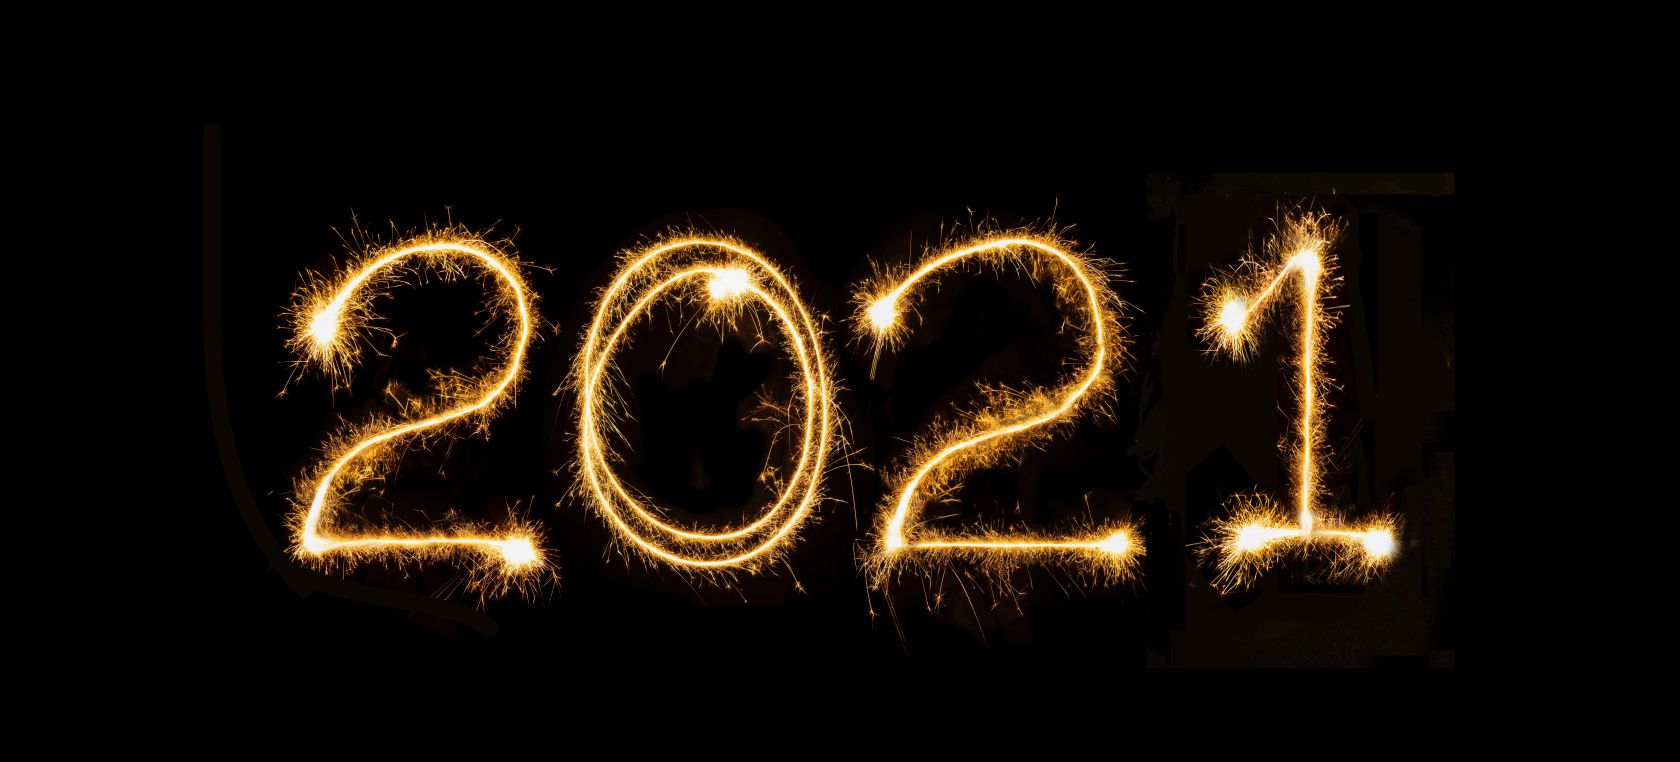 Feliz Año Nuevo! 21 ideas para felicitar el Año Nuevo 2021 por WhatsApp con  frases, imágenes o memes | Actualidad | LOS40